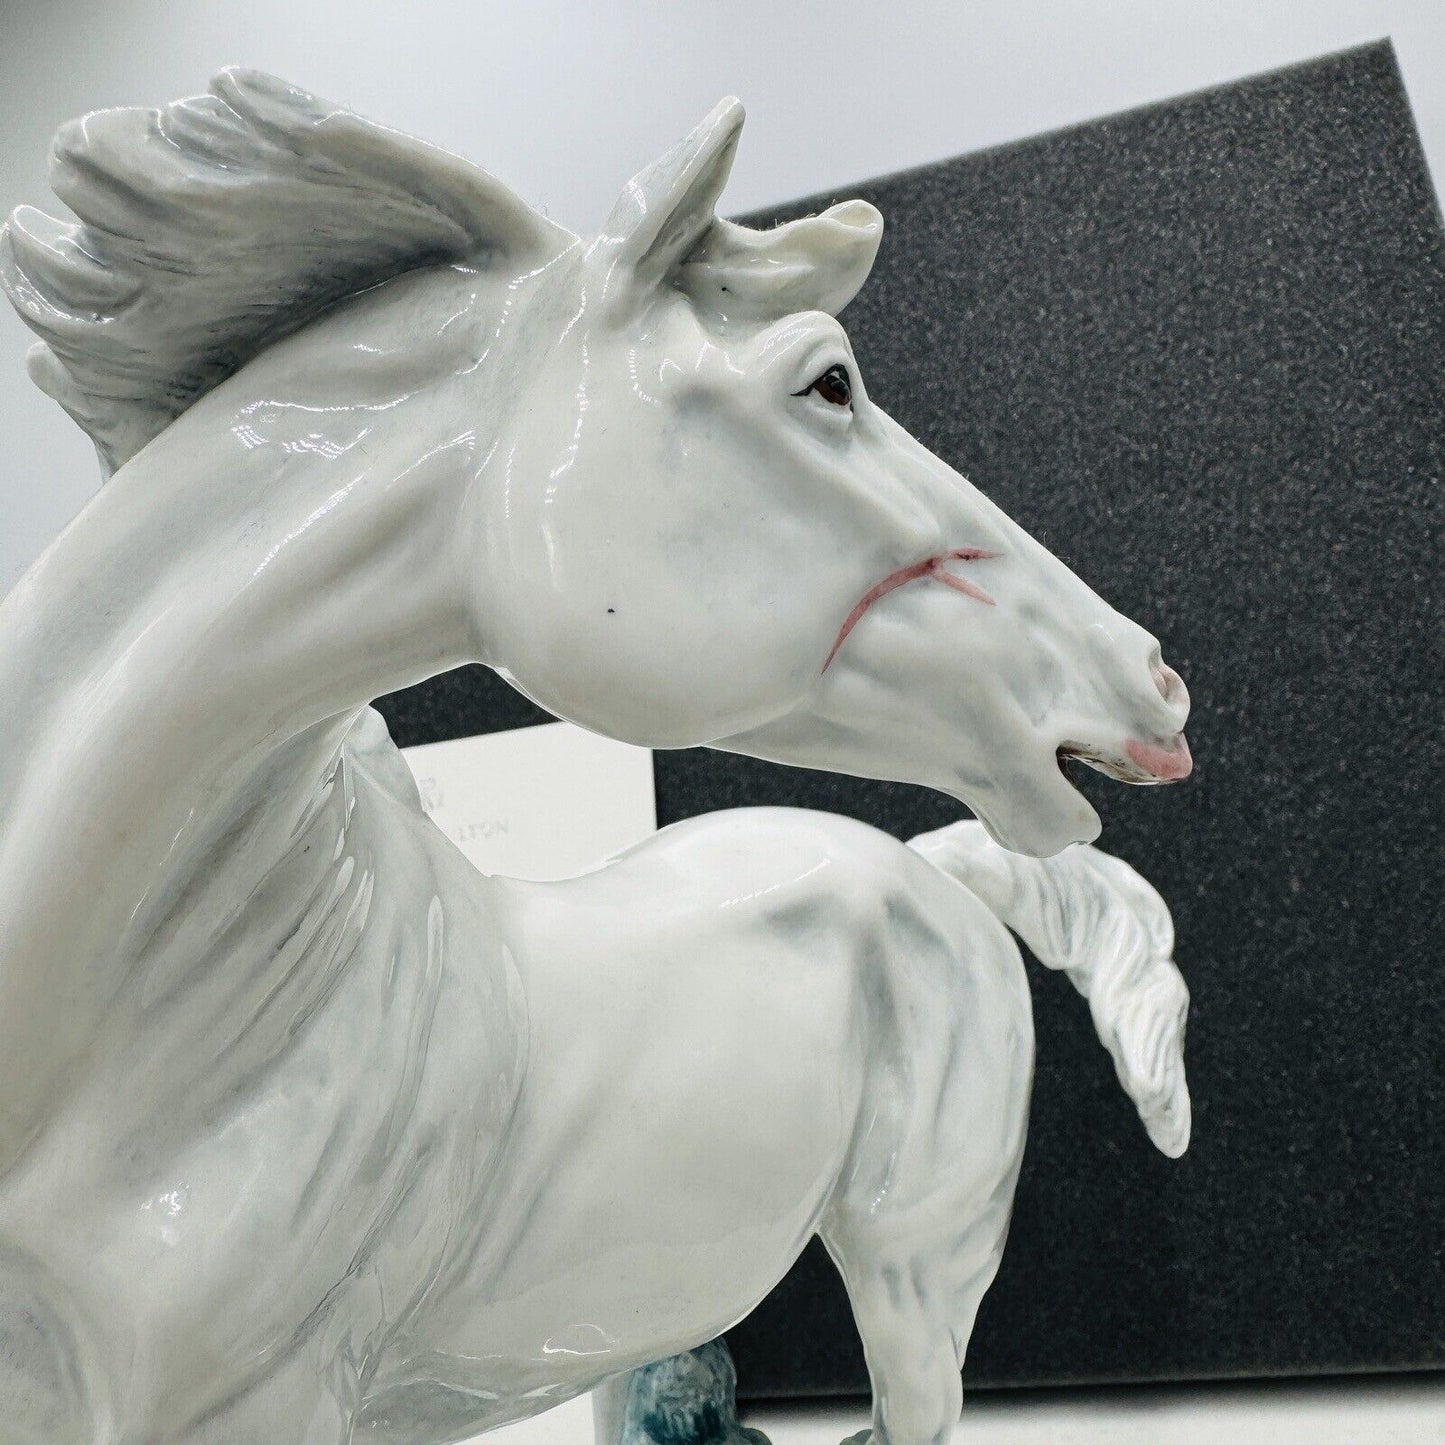 Royal Doulton Porcelain Horse Prestige Daybreak HN 4843 Limited Sculpture 15/250